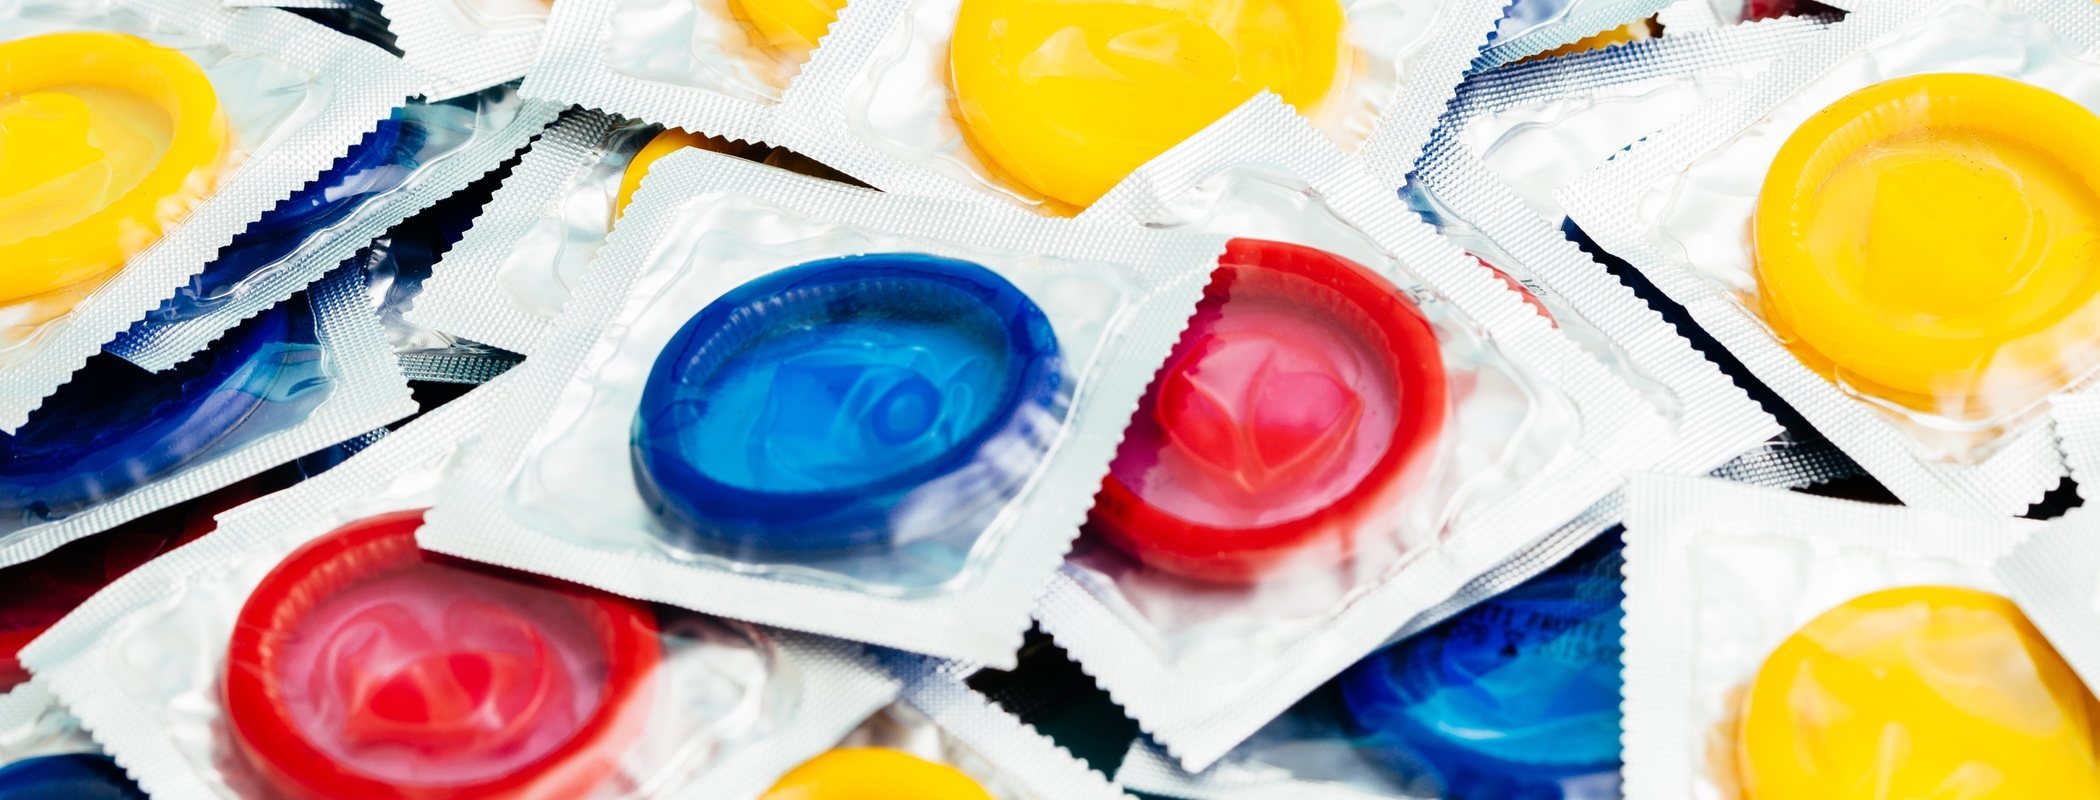 9 tipos de preservativos que debes conocer